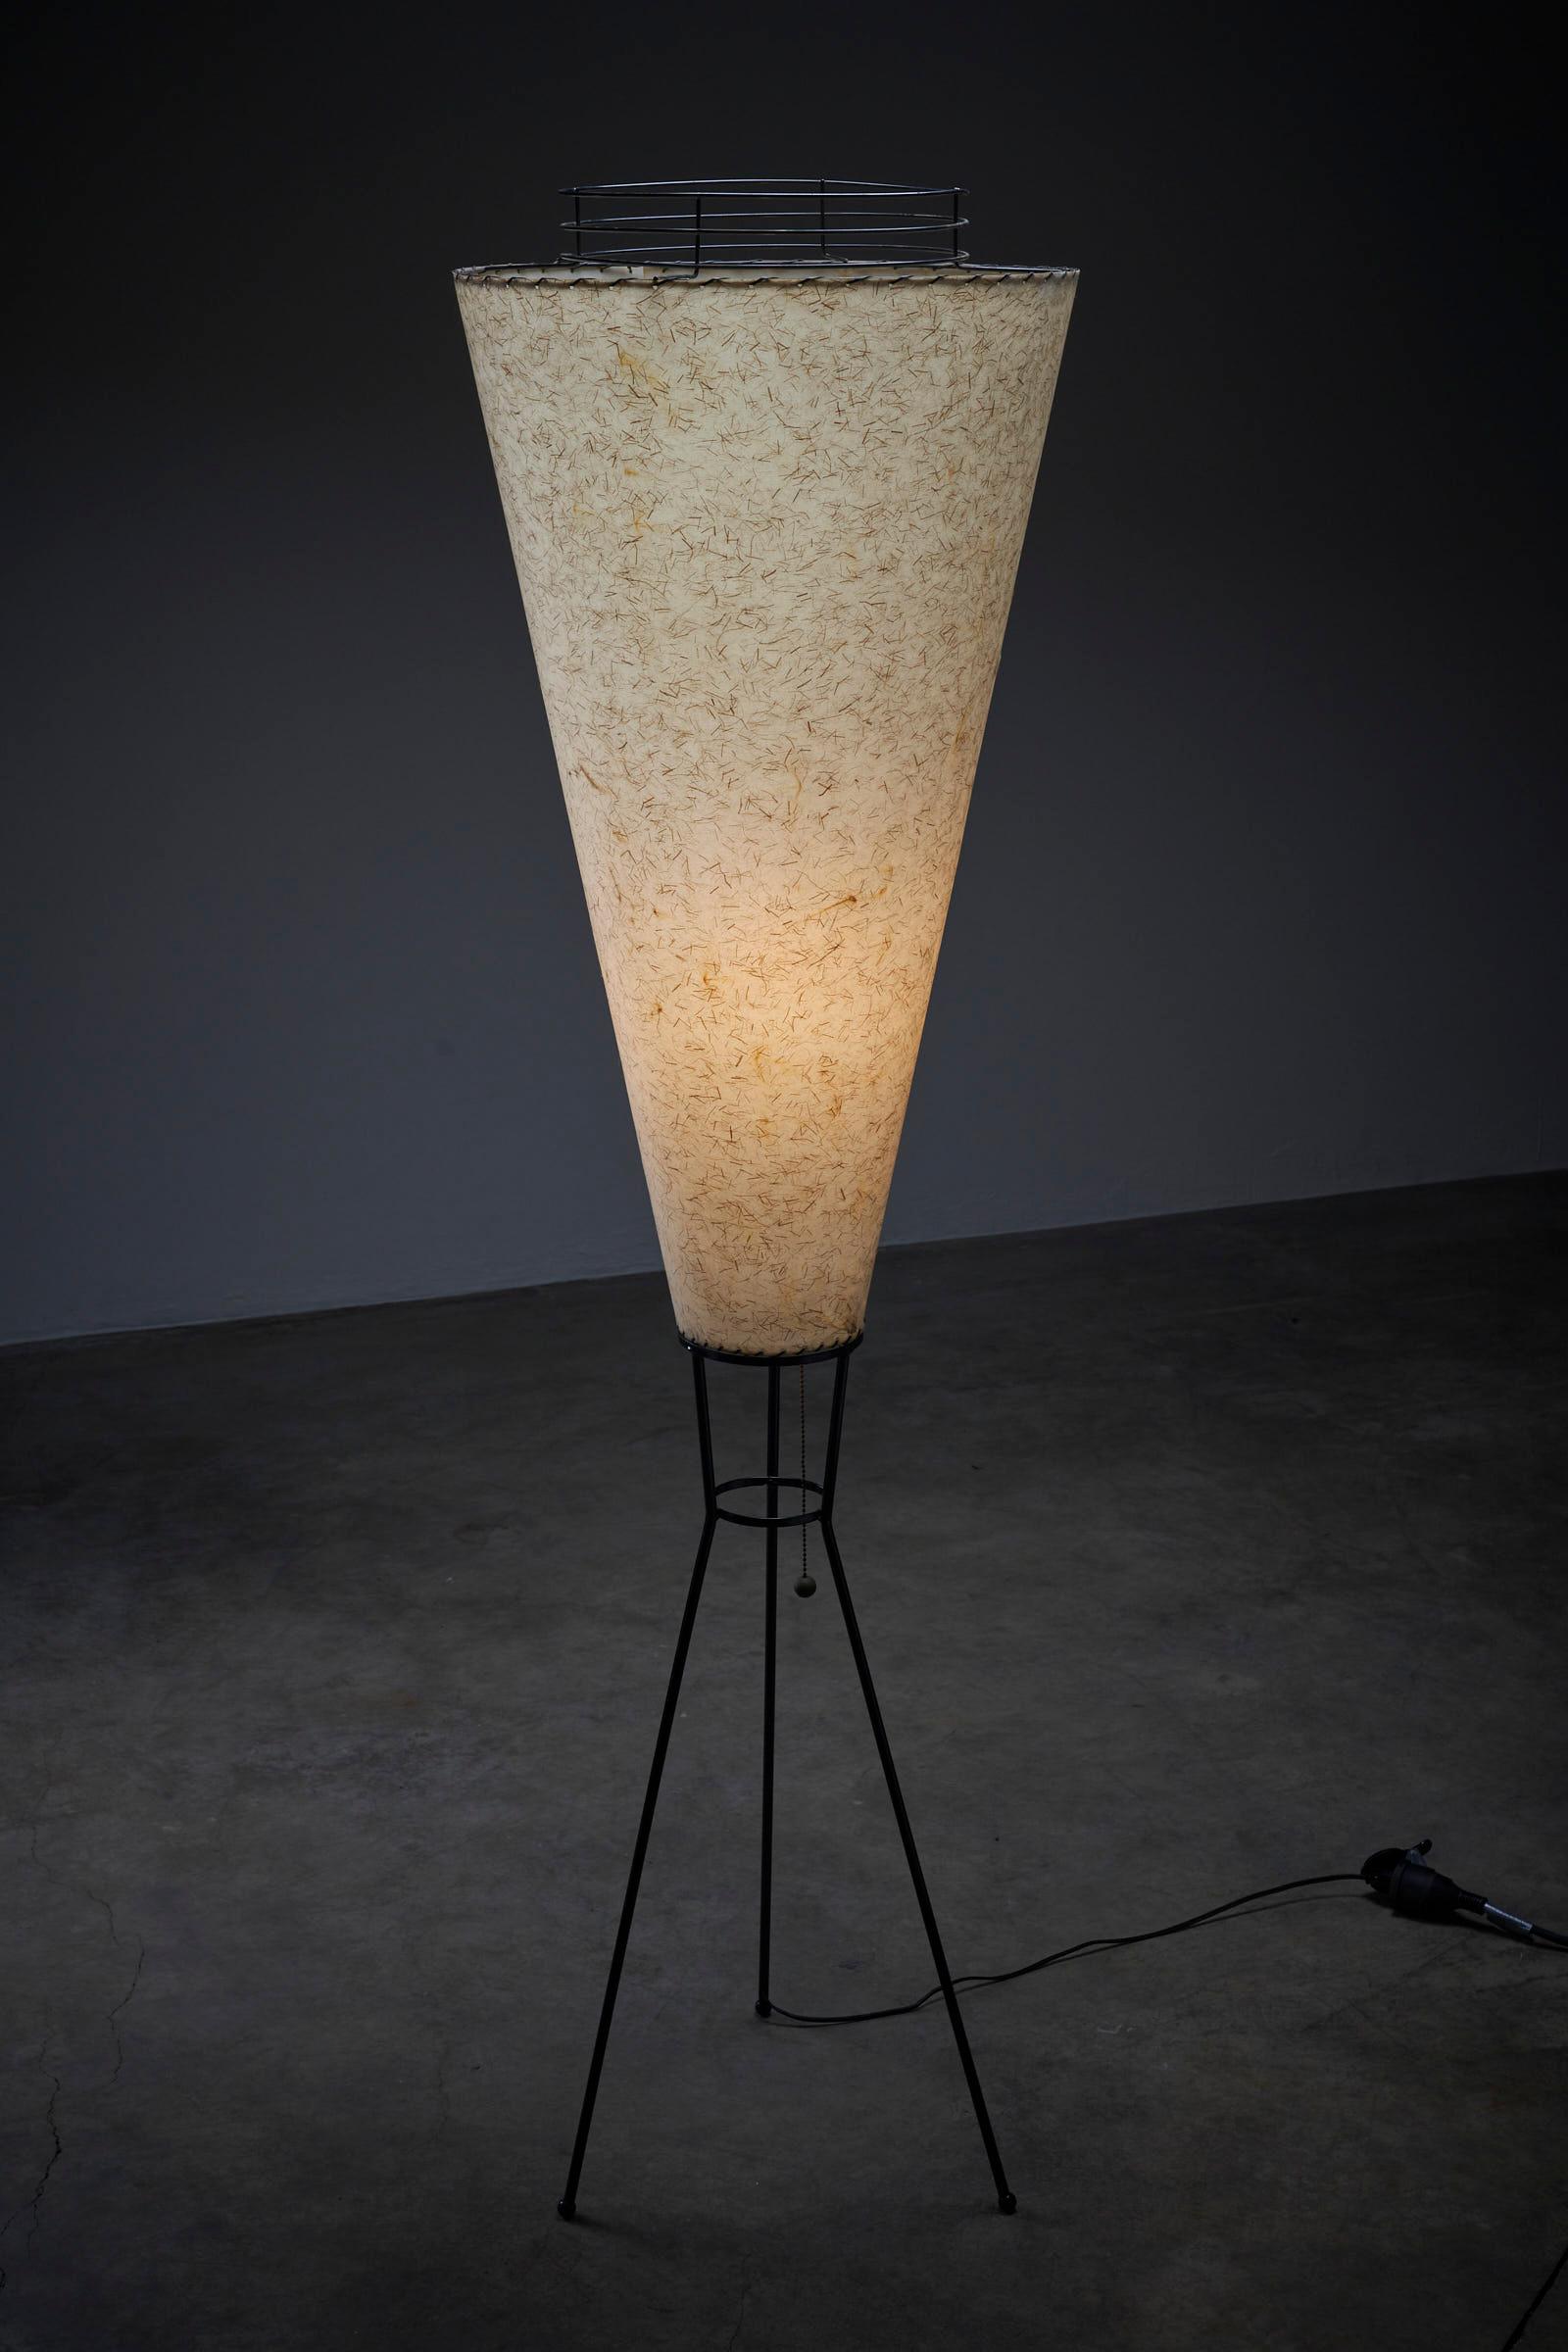 Wir präsentieren die atemberaubende Large Cone Tripod Stehleuchte von Archaic Smile Inc. Diese Stehlampe kombiniert mühelos elegantes Design mit einem Hauch von Textur und schafft so einen fesselnden Blickpunkt in jedem Innenraum.

Die Lampe verfügt